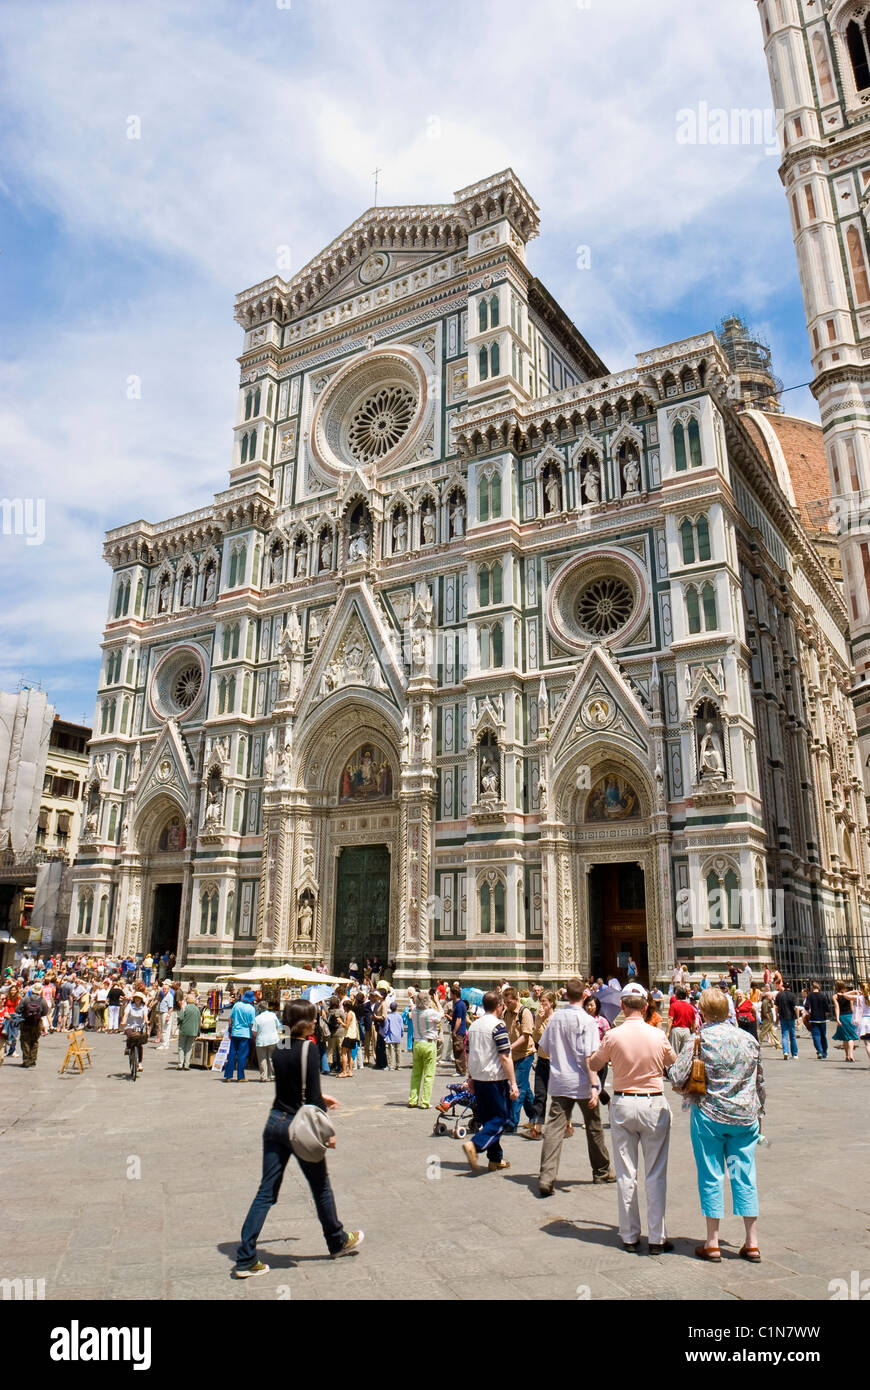 Florenz, Italien. Kathedrale von Santa Maria del Fiore (1436) oder der Dom, von der Piazza San Giovanni gesehen. Stockfoto